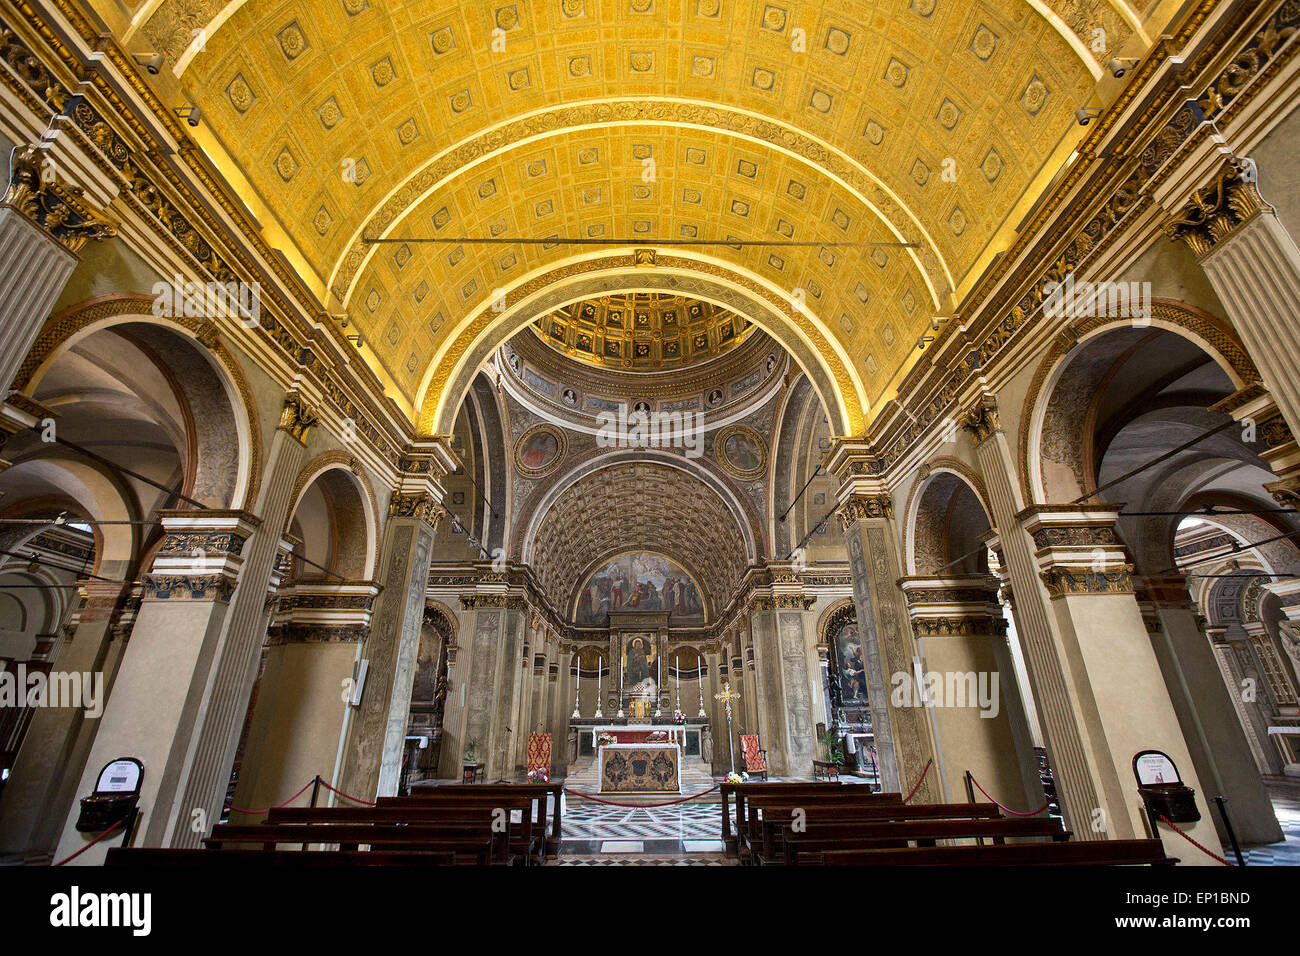 Santa Maria Presso San Satiro church, Milan, Italy Stock Photo - Alamy